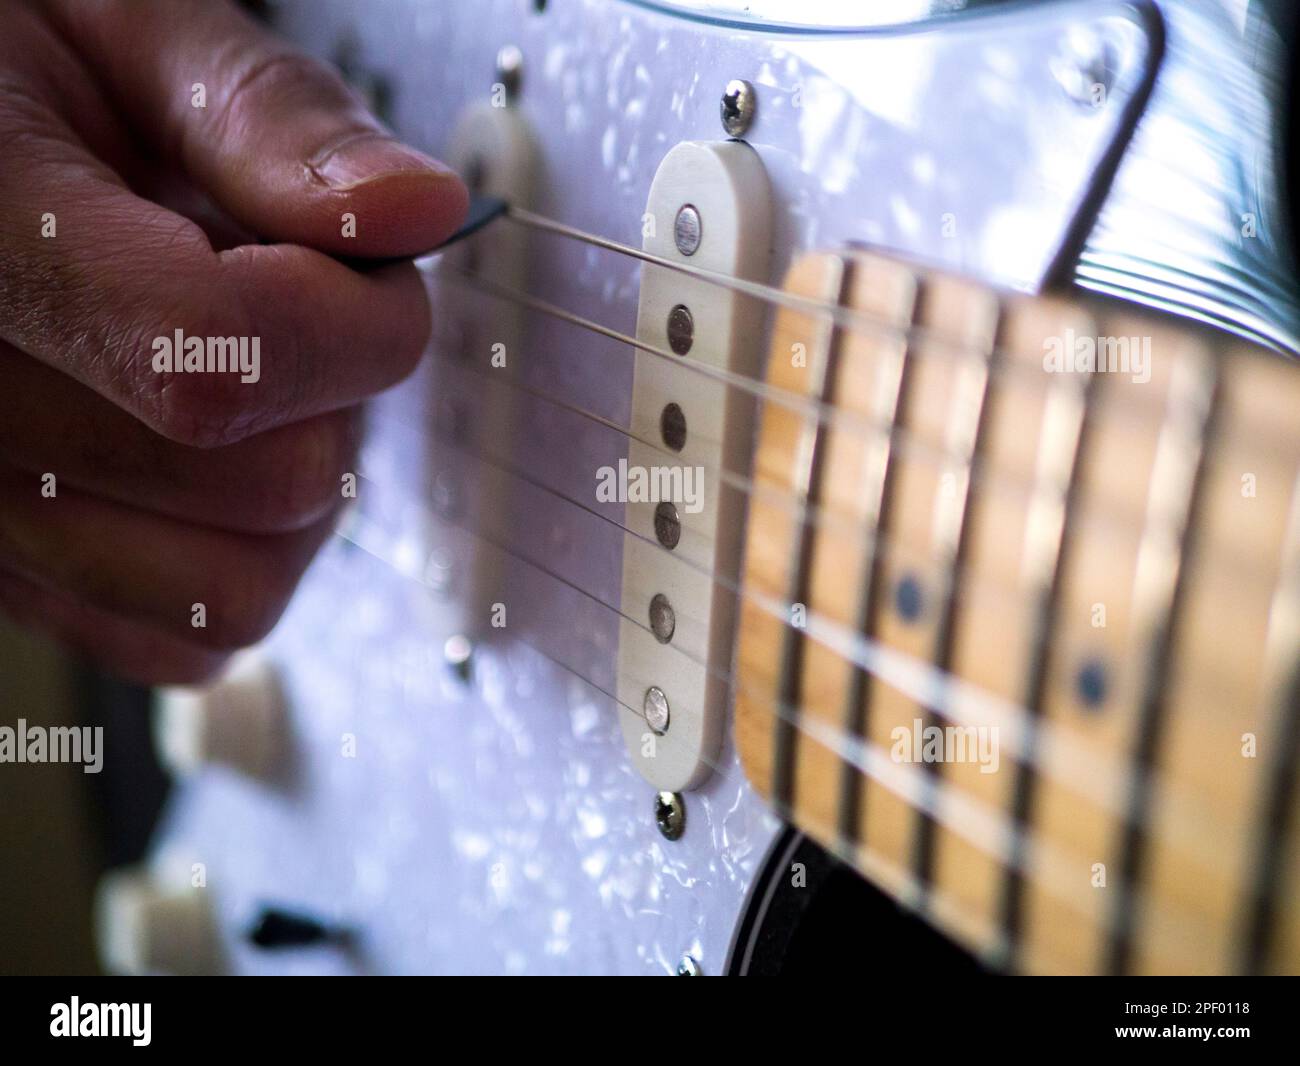 Man playing guitar close-up Stock Photo